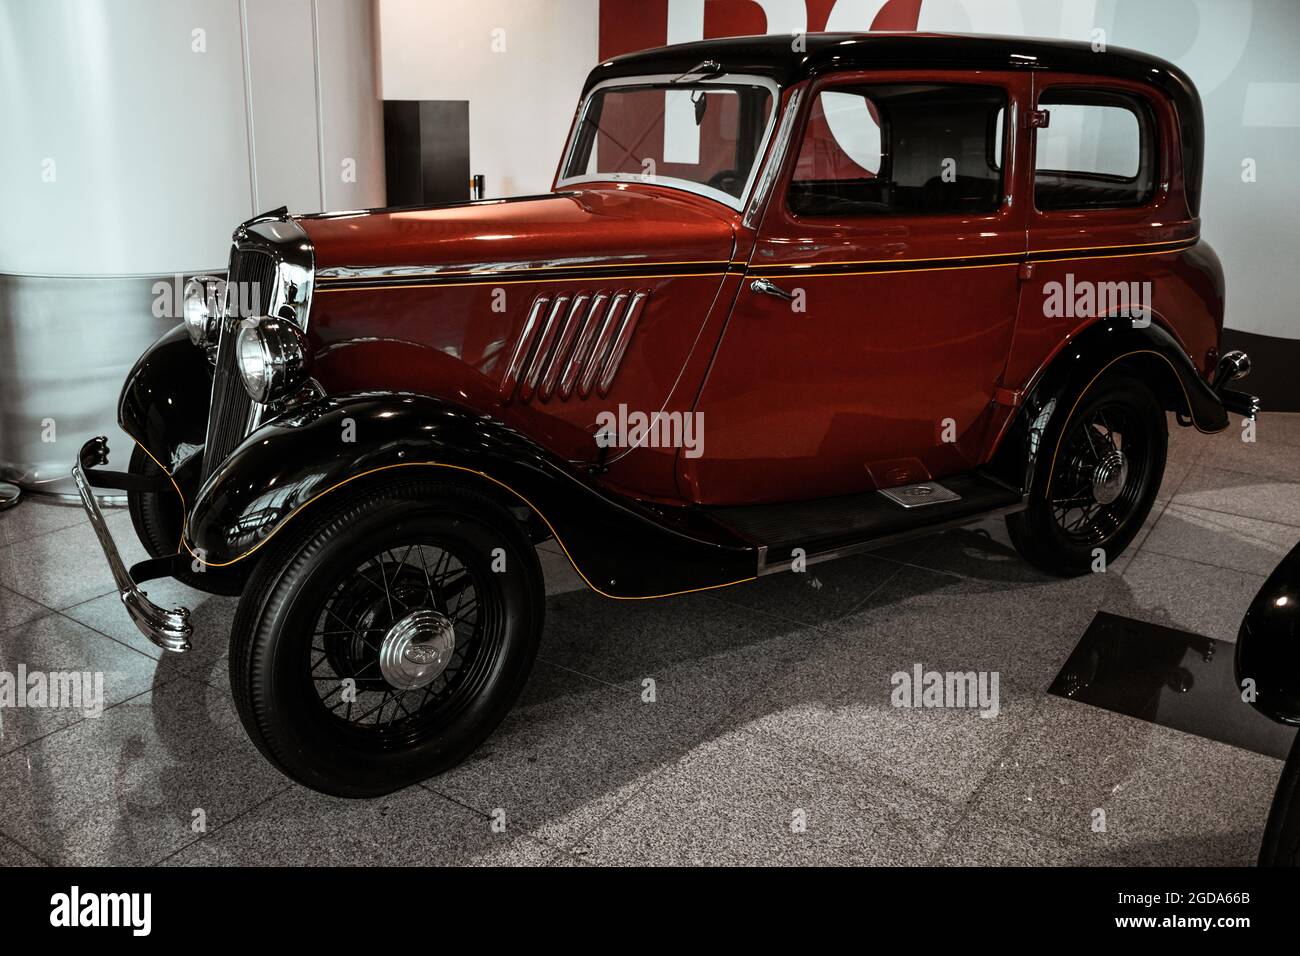 4 juin 2019, Moscou, Russie: Vue latérale de la voiture américaine Ford modèle y 1933. Voitures rétro classiques des années 1930. Banque D'Images